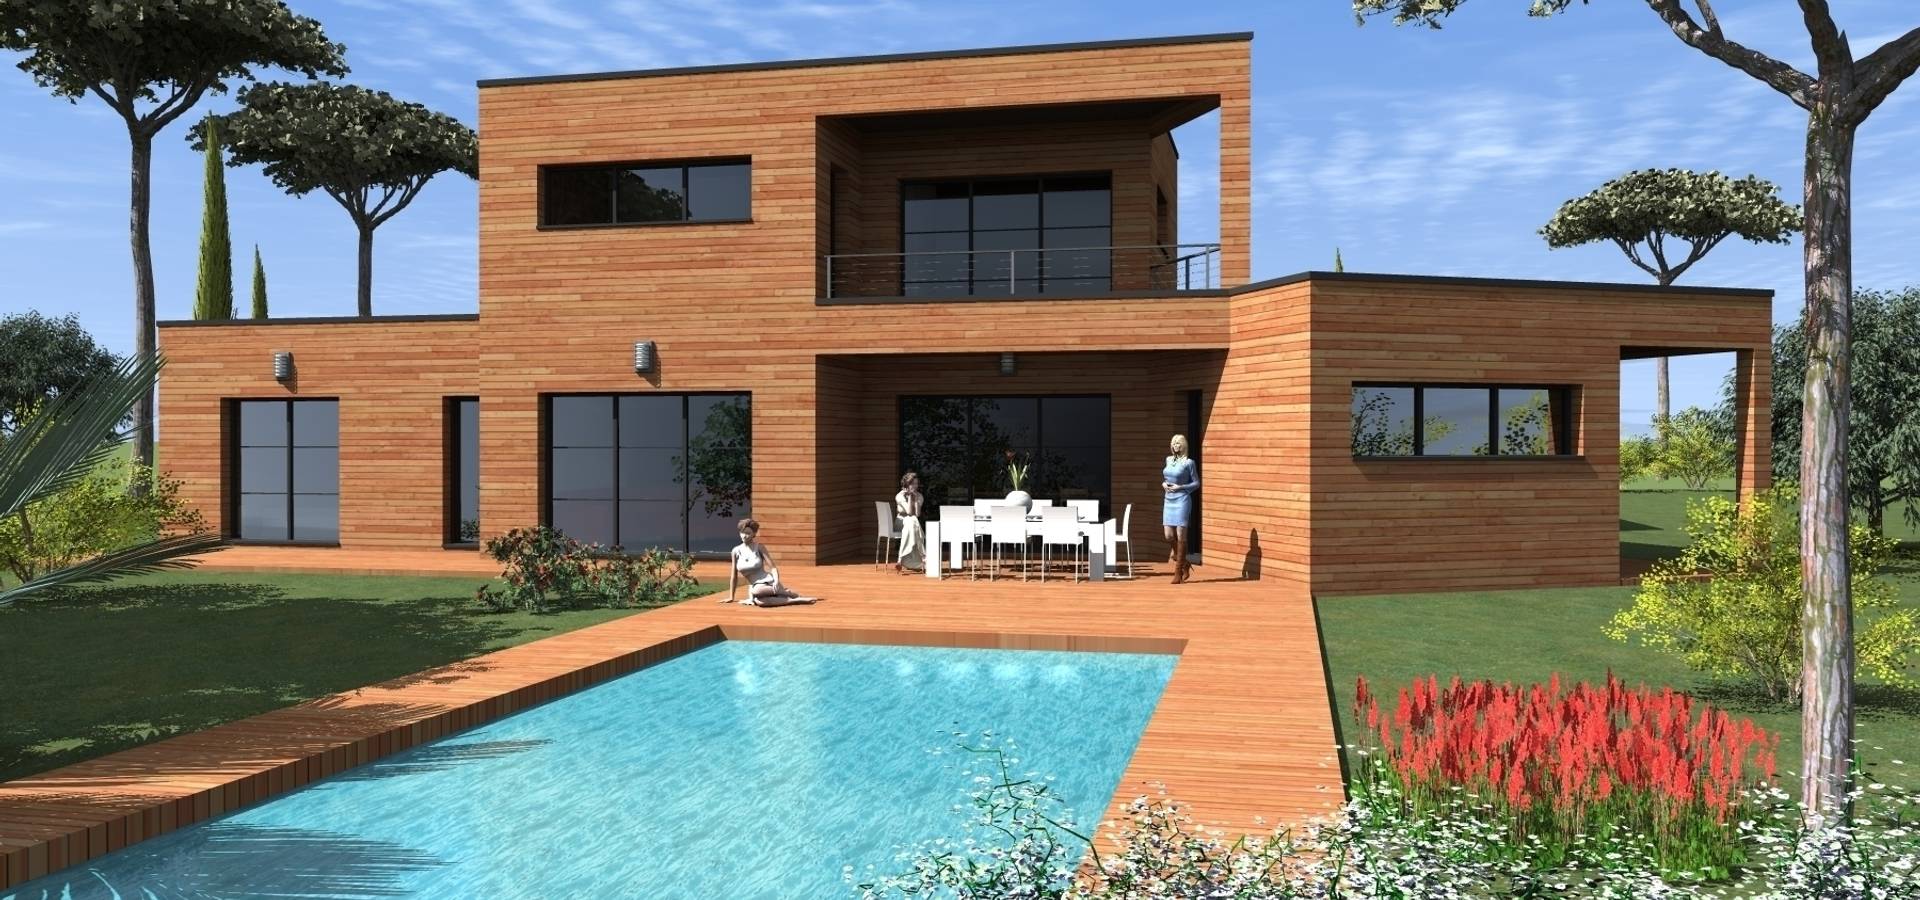 Plan Decima Villa Moderne By Construire Online Homify